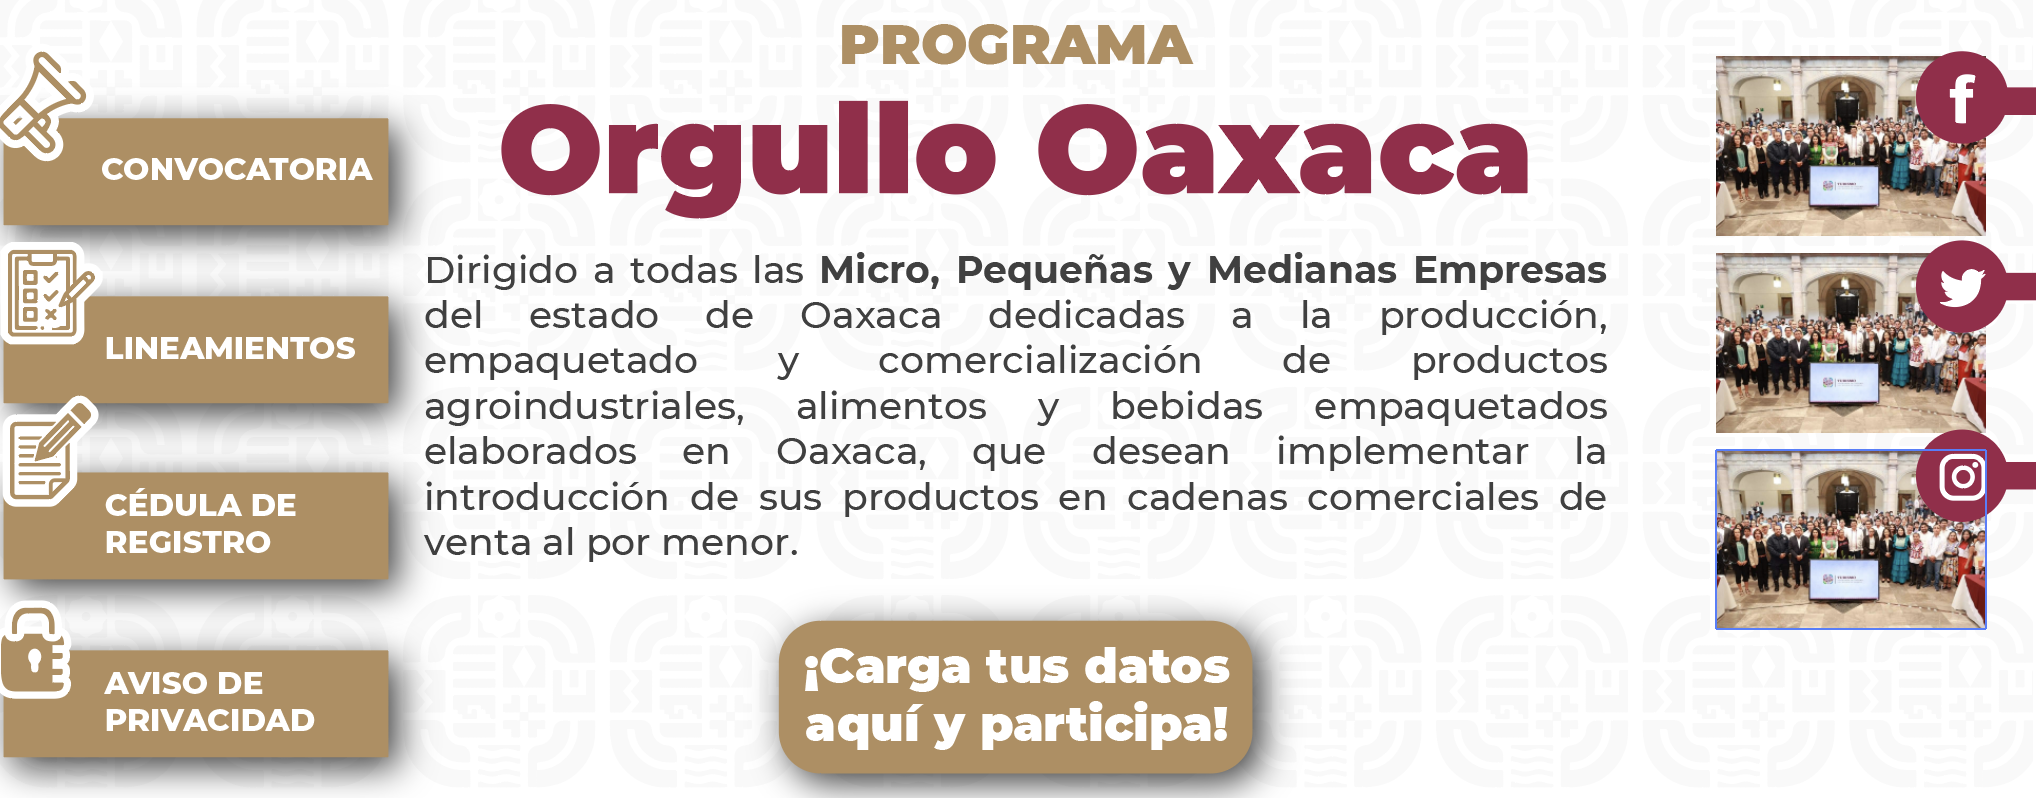 Orgullo Oaxaca